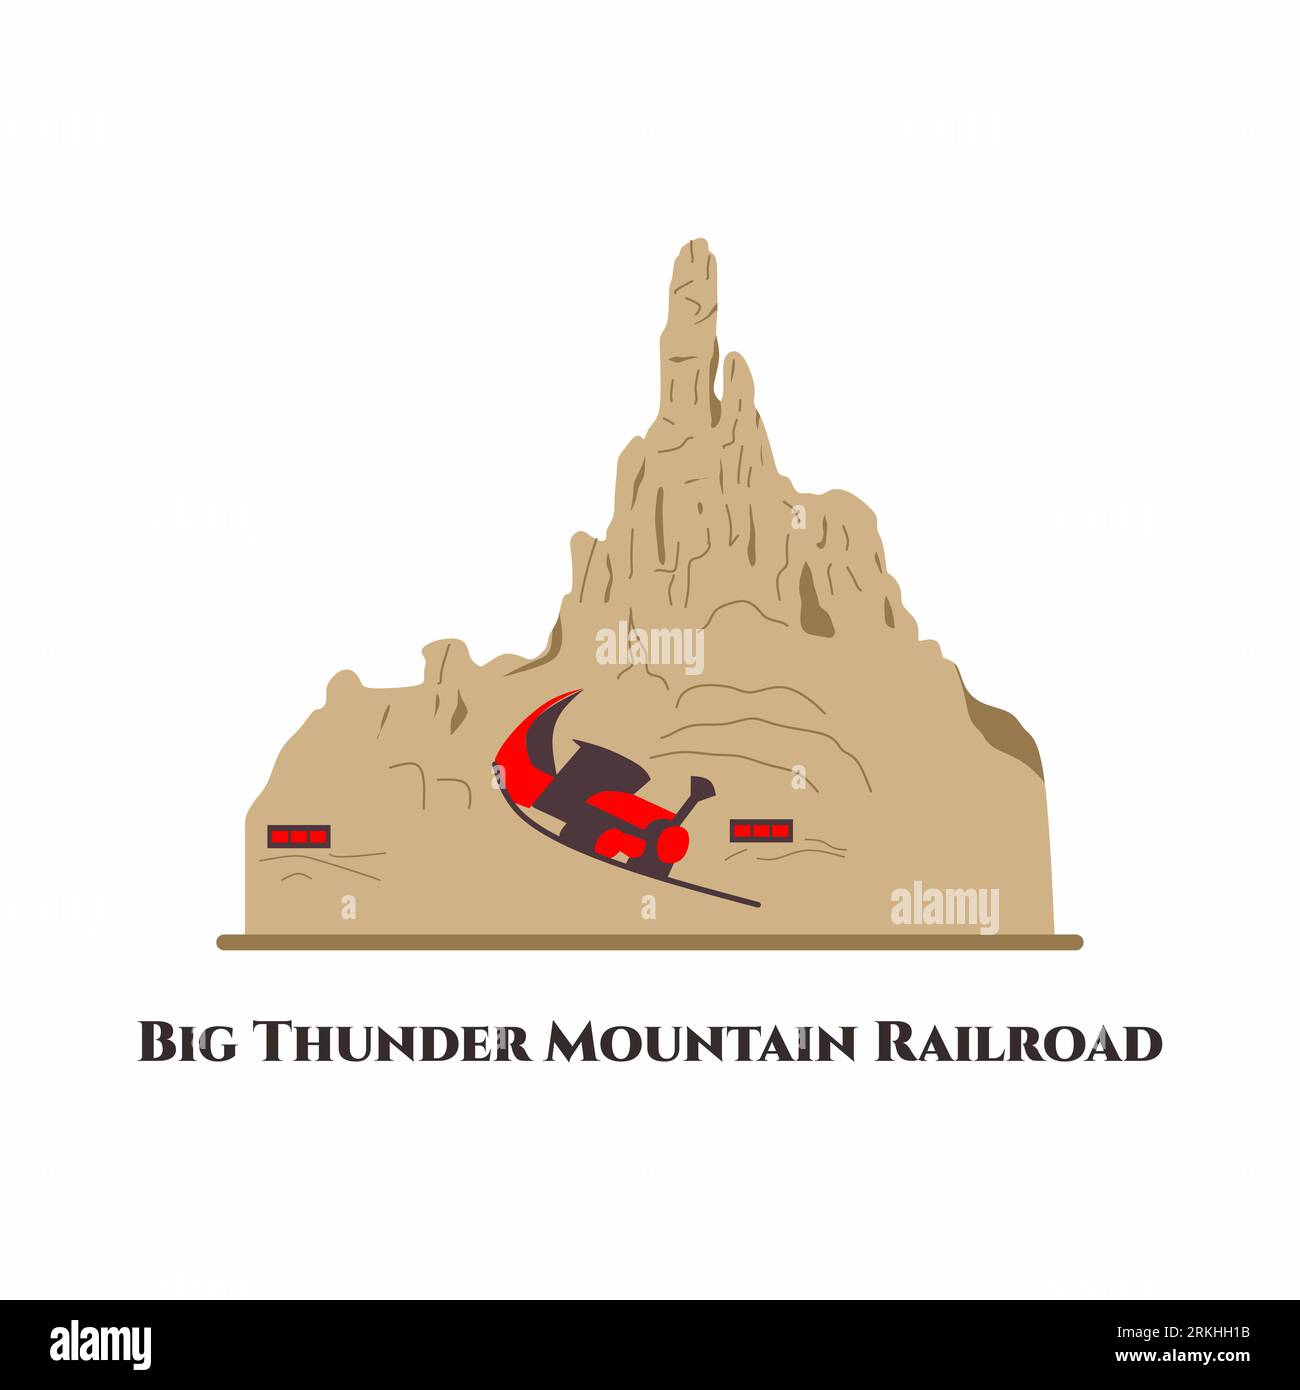 Big Thunder Mountain Railroad. Il s'agit d'une montagne russe de train de mine située à Frontierland dans plusieurs parcs Disney de style Disneyland dans le monde entier. Ce plac Illustration de Vecteur